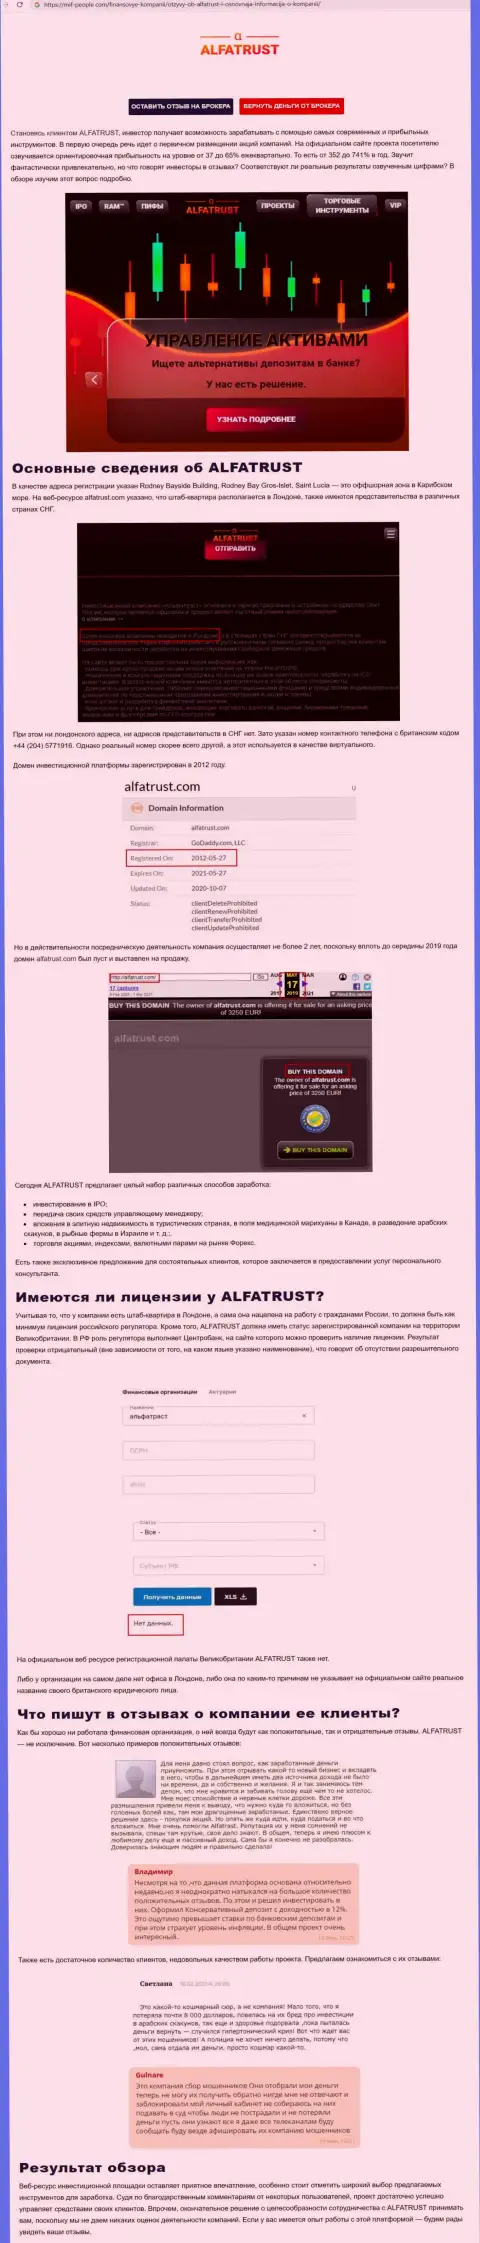 Информационный сервис Mif-People Com представил информацию об форекс организации AlfaTrust